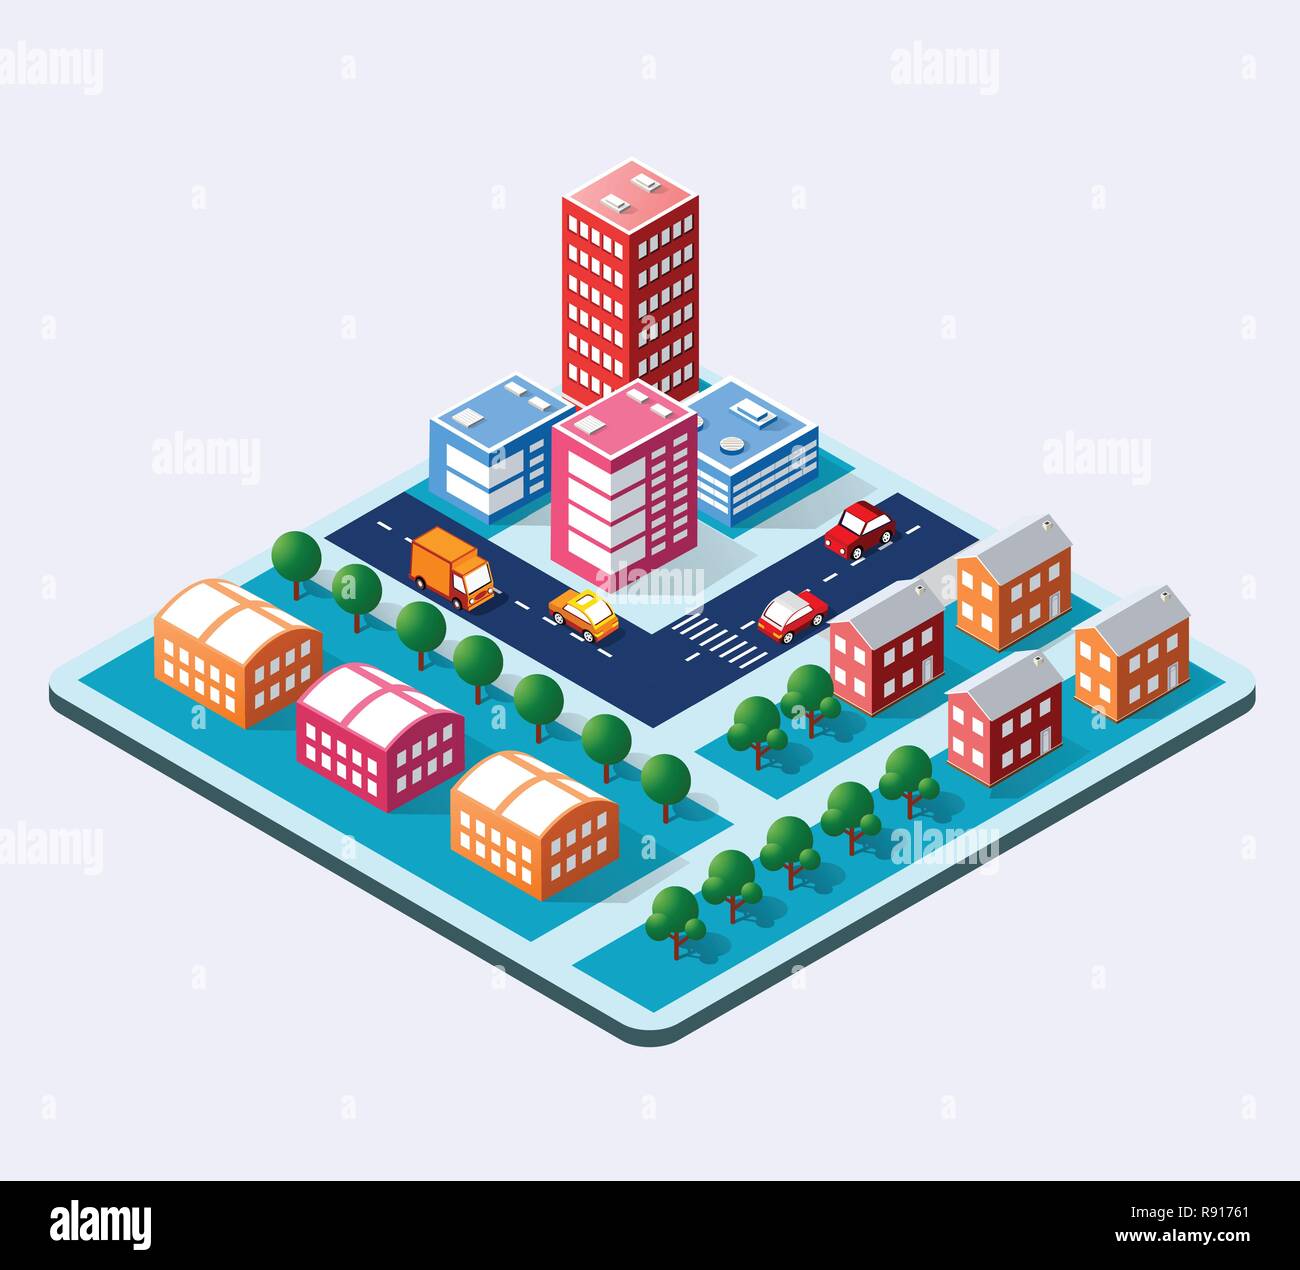 3D isométrique colorée ville de gratte-ciel, des maisons et des rues de la ville du milieu urbain paysage multicolore pour la conception et la présentation conceptuelle Illustration de Vecteur